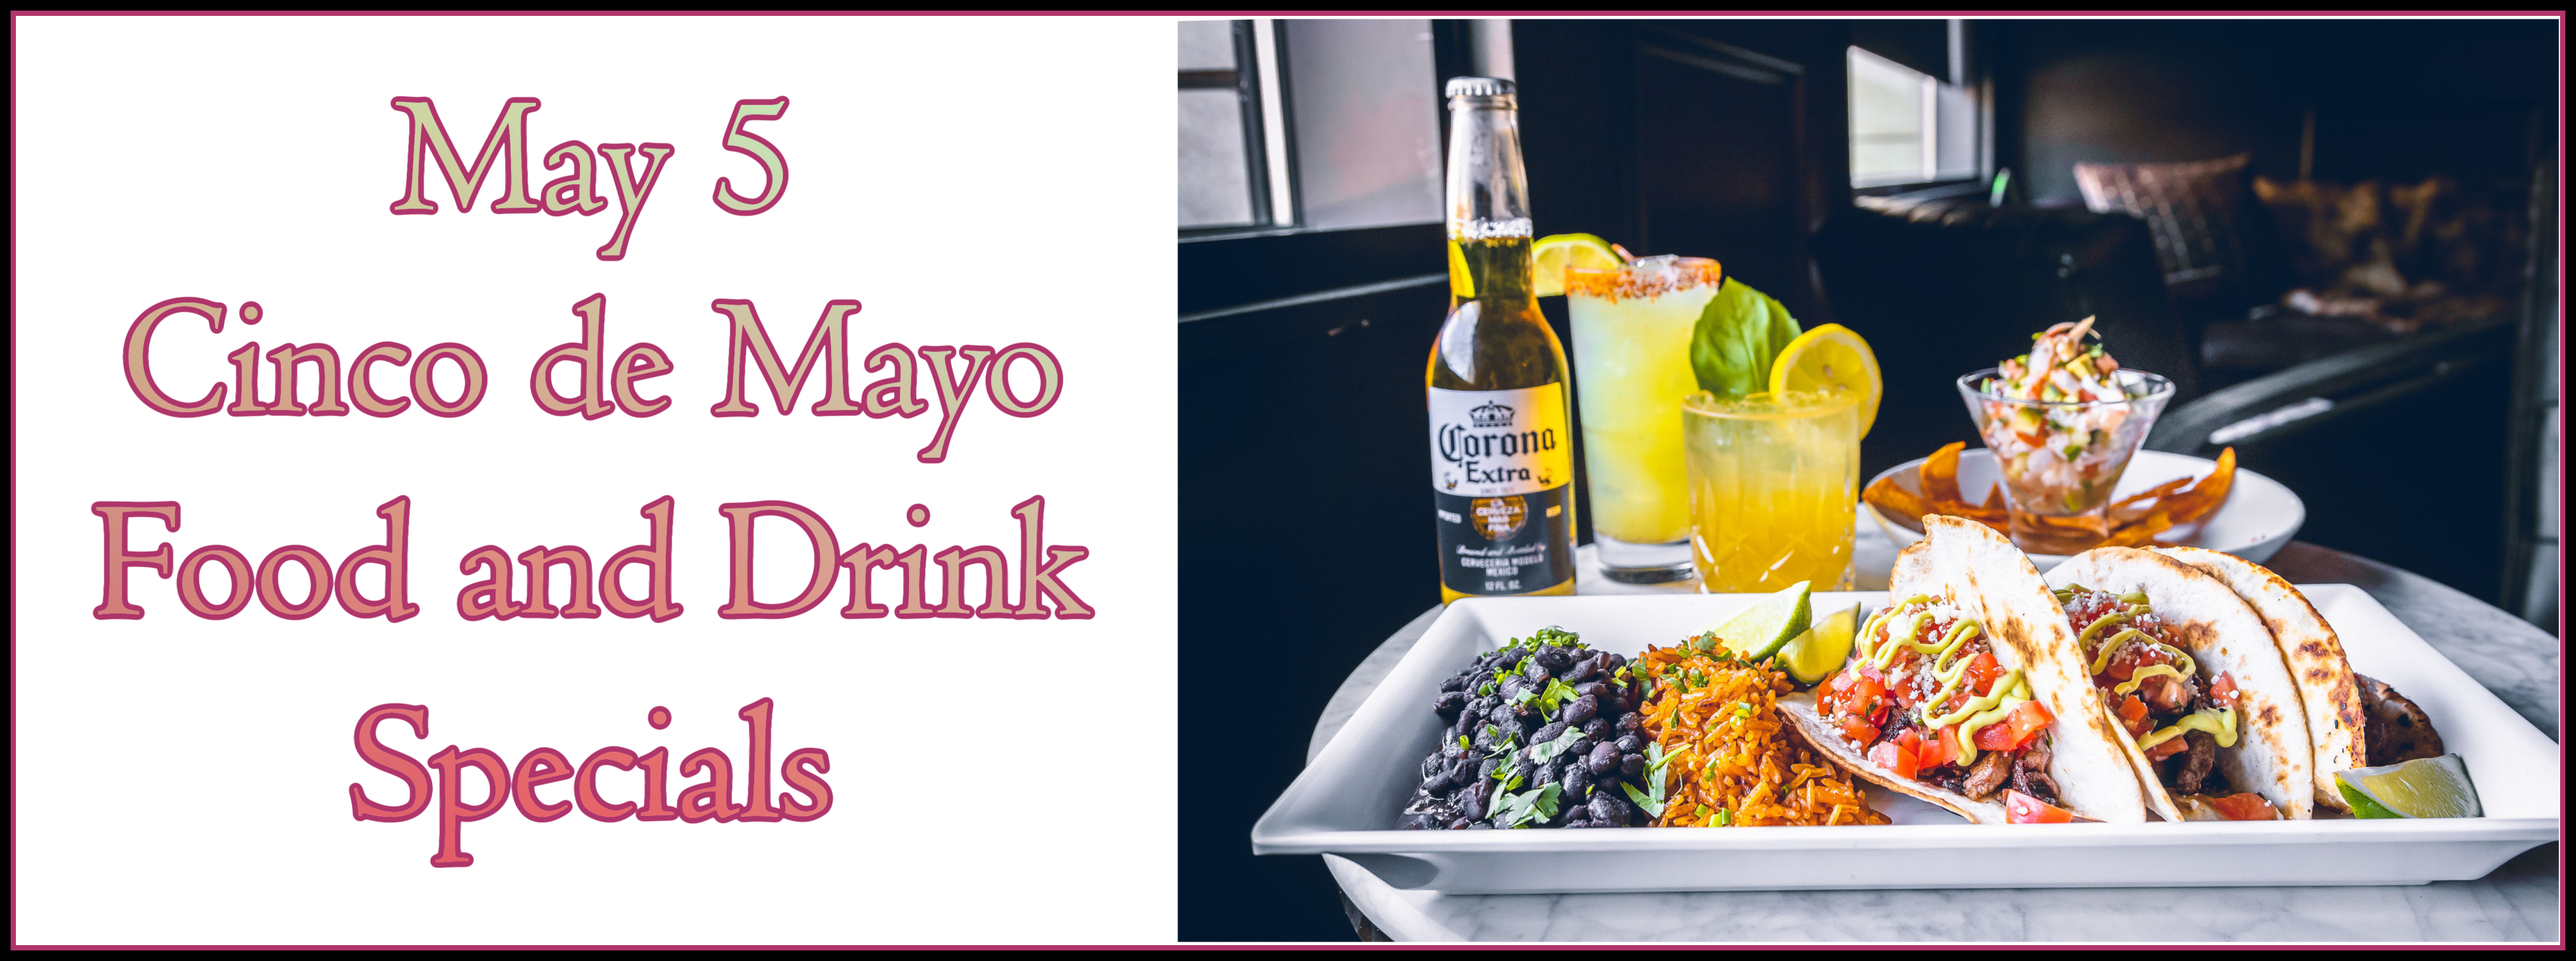 Cinco de Mayo drink specials